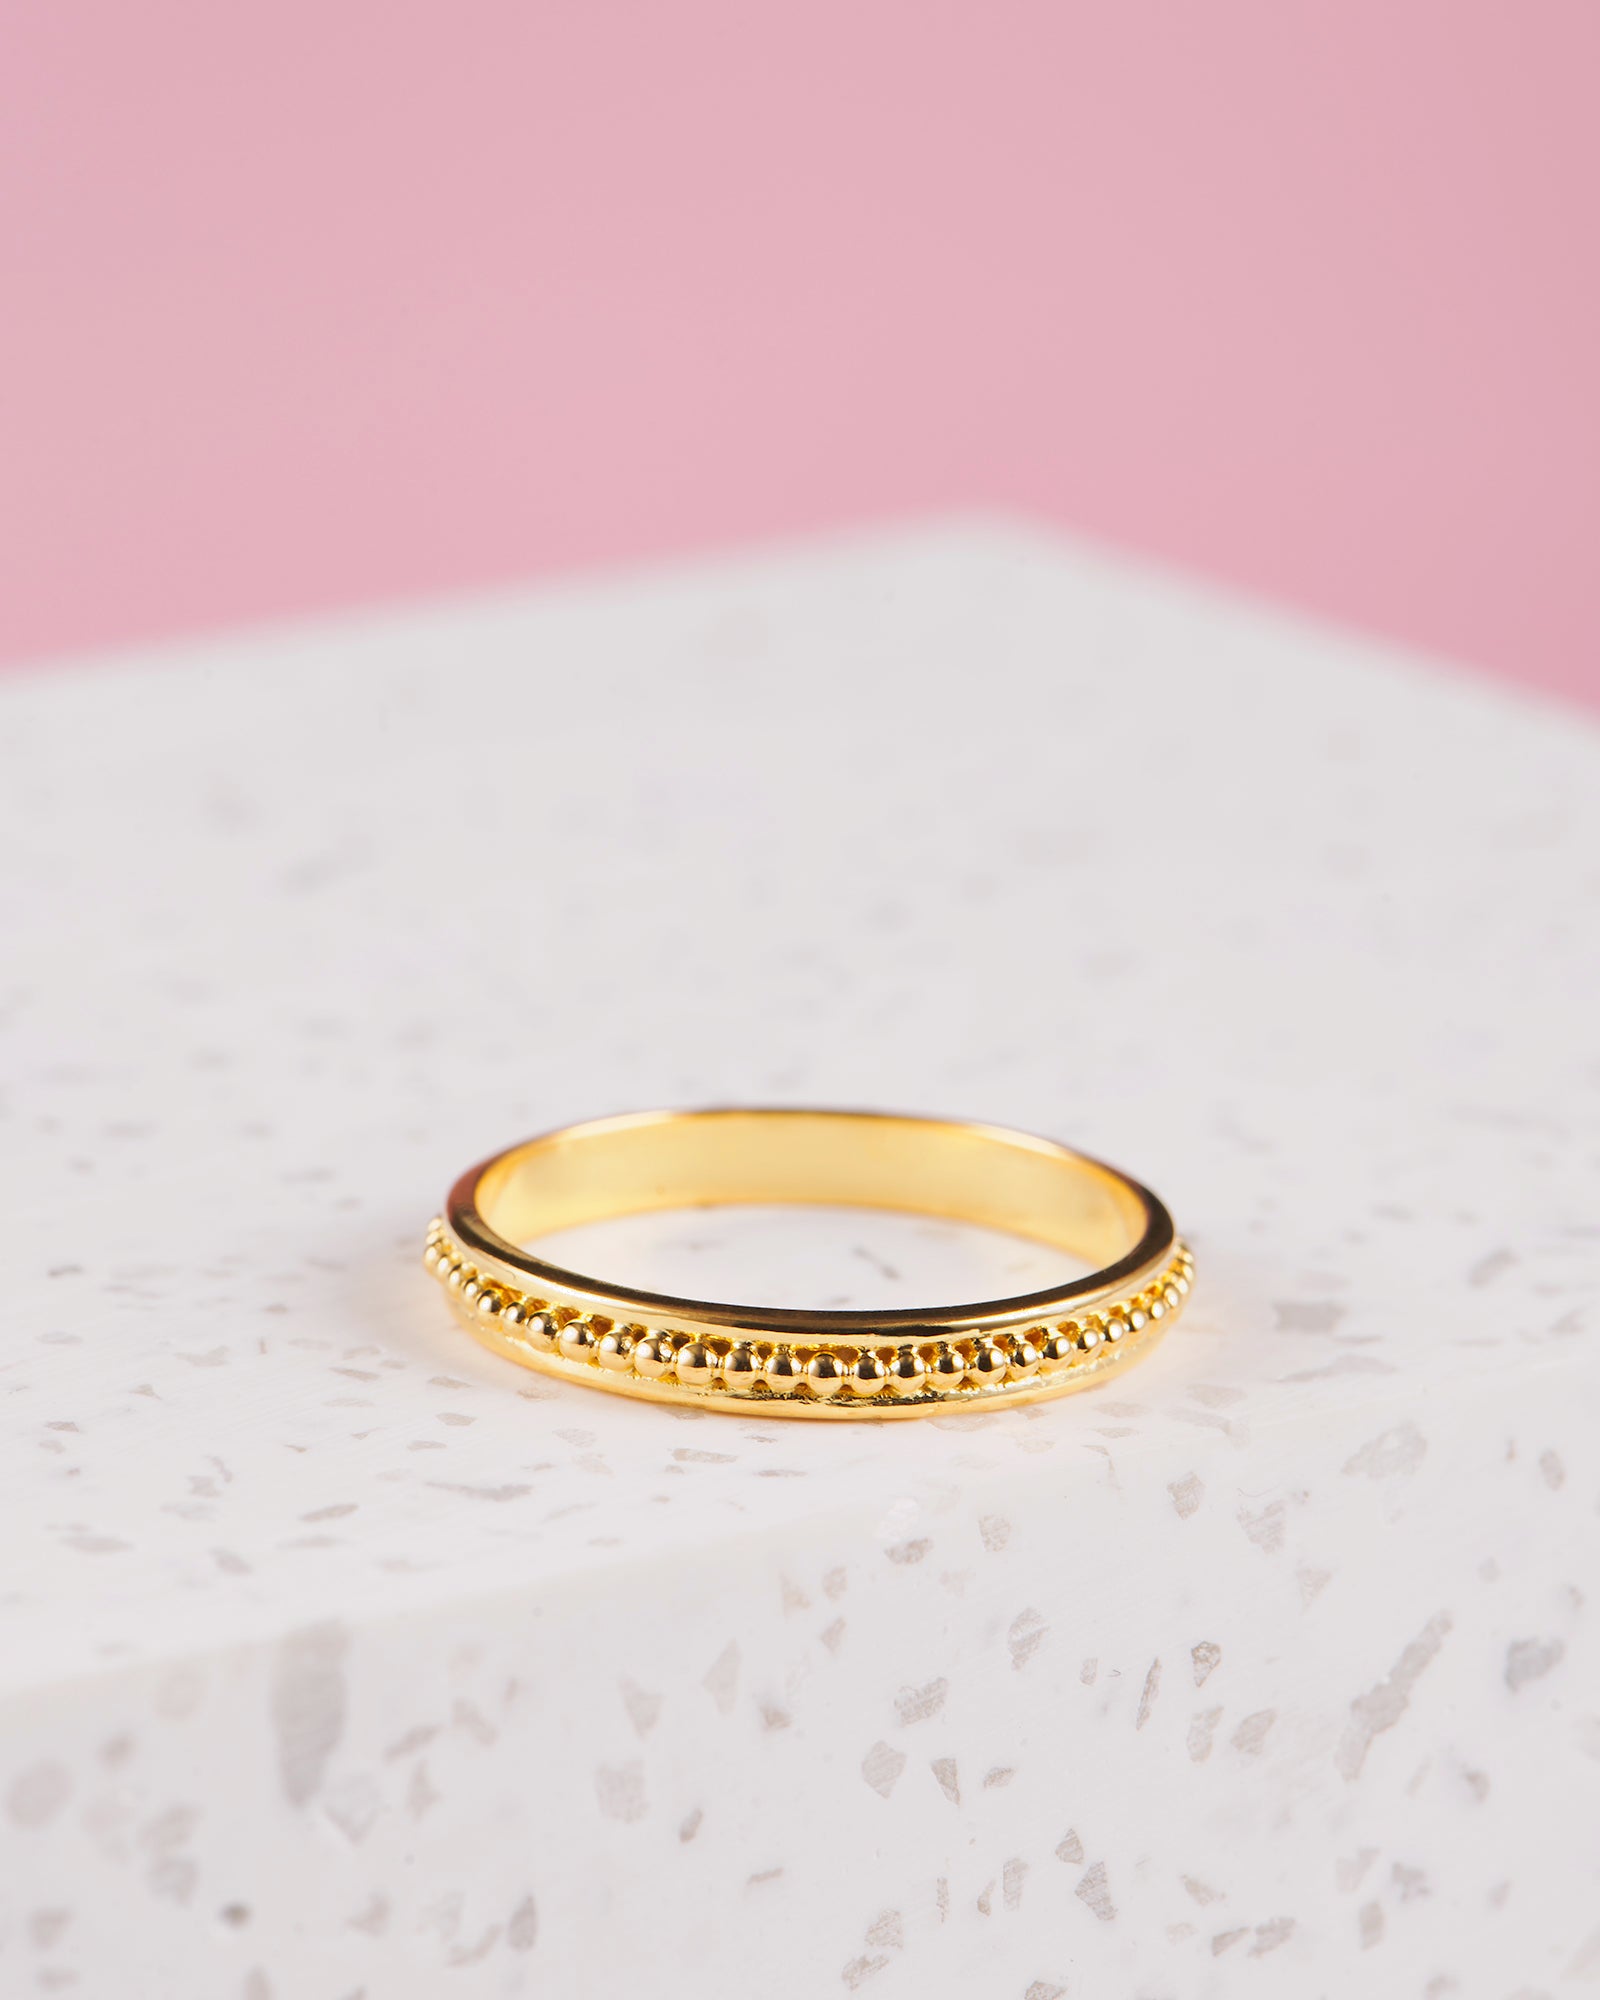 Bali Schmuck| VERLAN Jewellery | Fairfashion | Handgemachte Ringe im Boho Look aus Bali | Single Fin Ring mit Perlen | Wunderschön und mit viel Liebe angefertigt